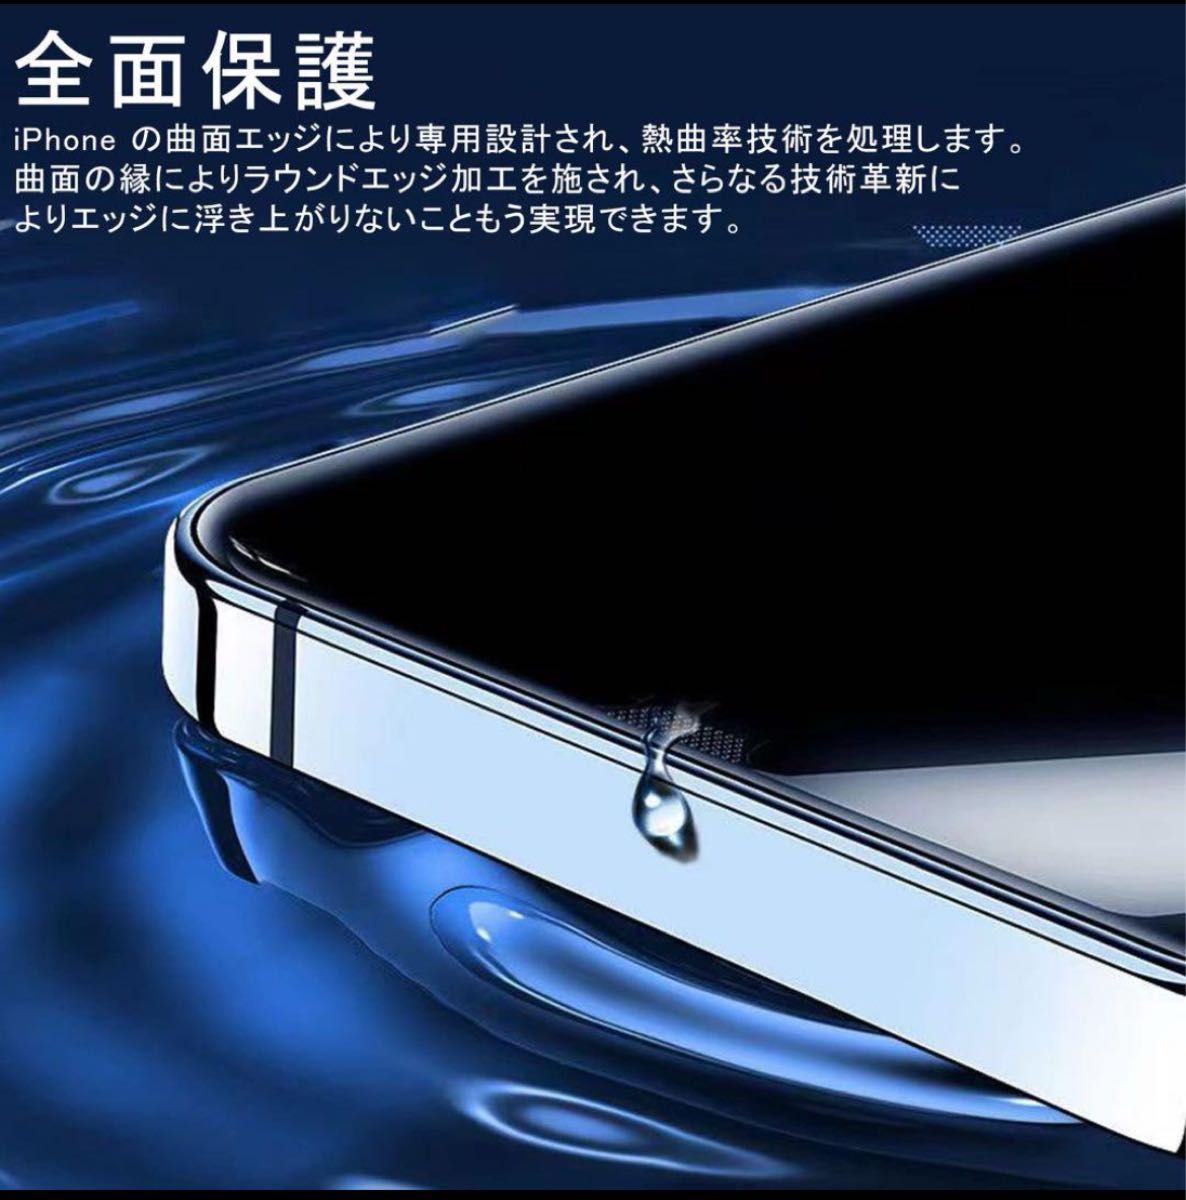 iPhone 14 Pro ガラスフィルム9H硬度 耐衝撃 レンズフィルム　強化保護フィルム